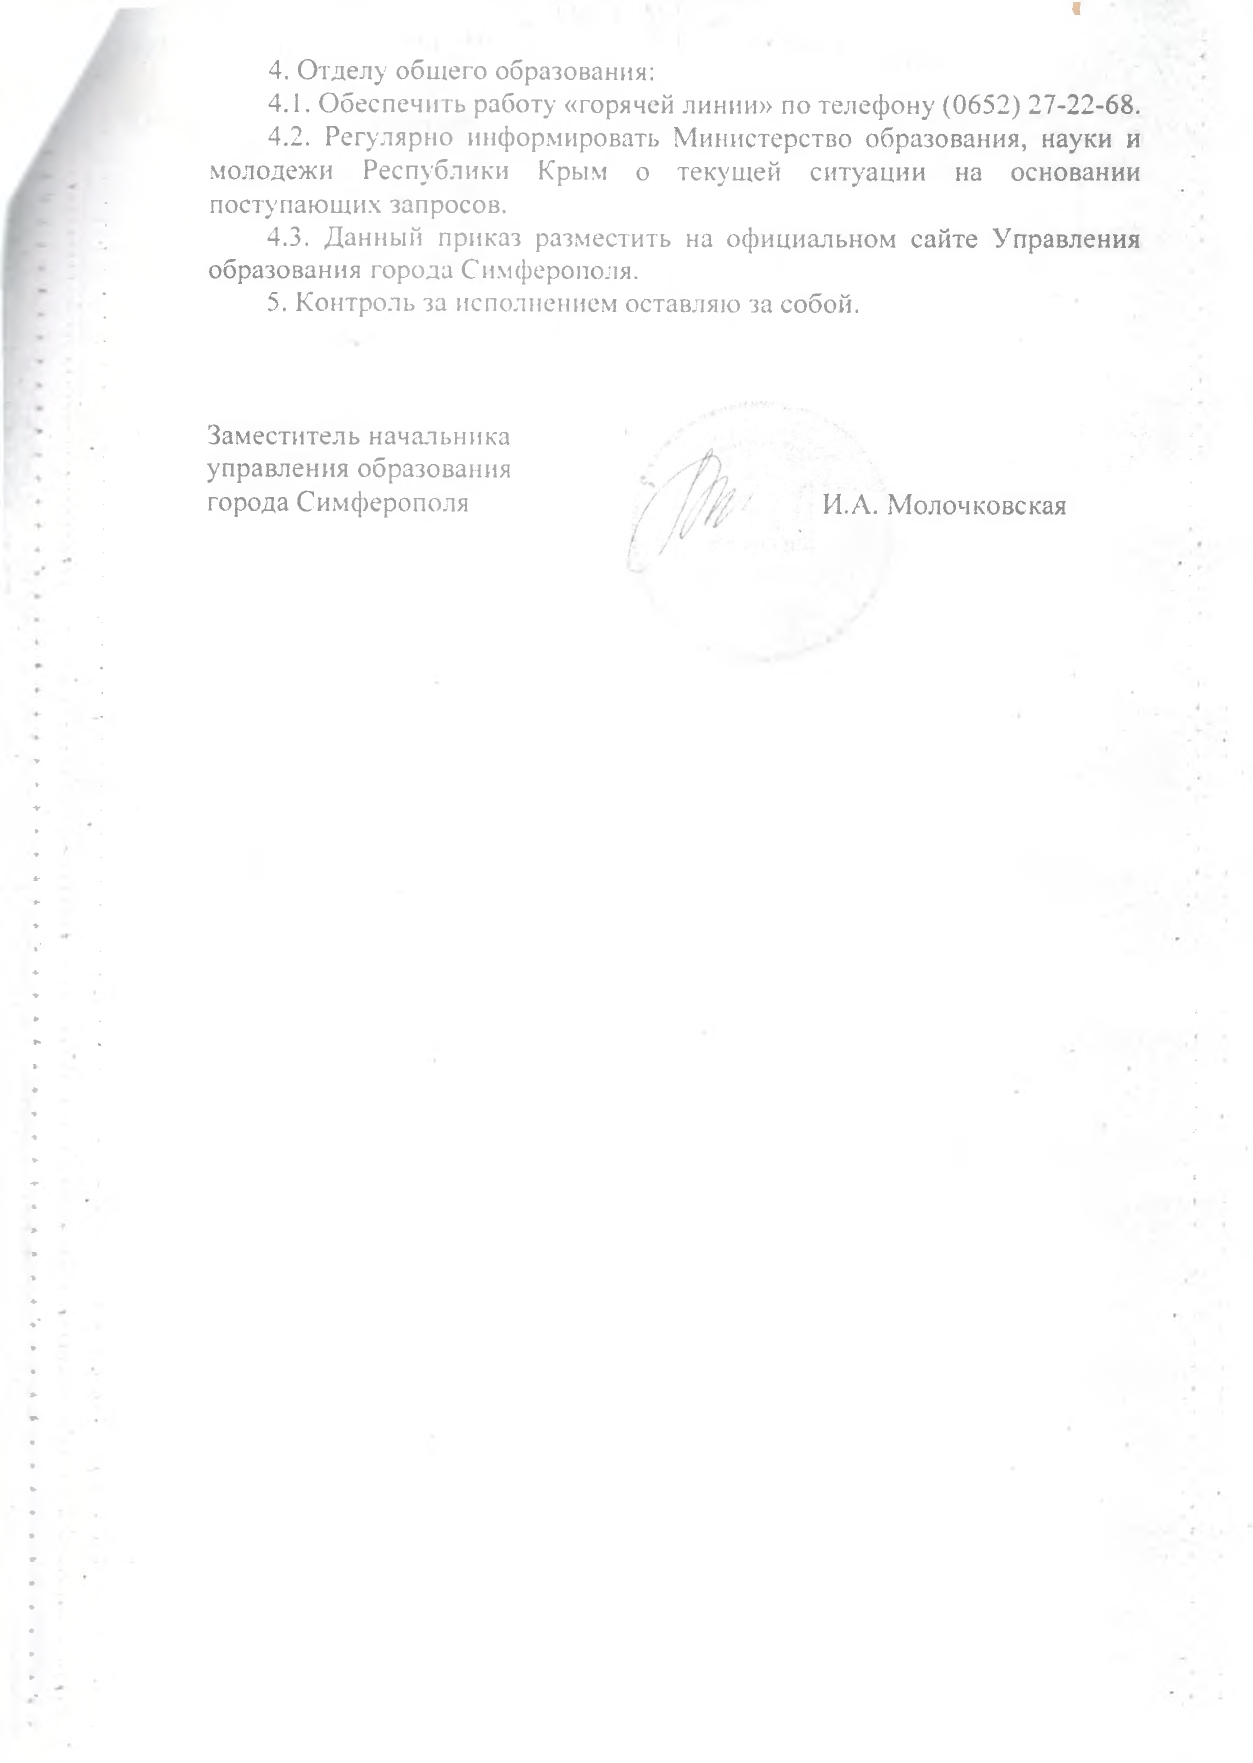 нормативные документы коронавирус page 0008